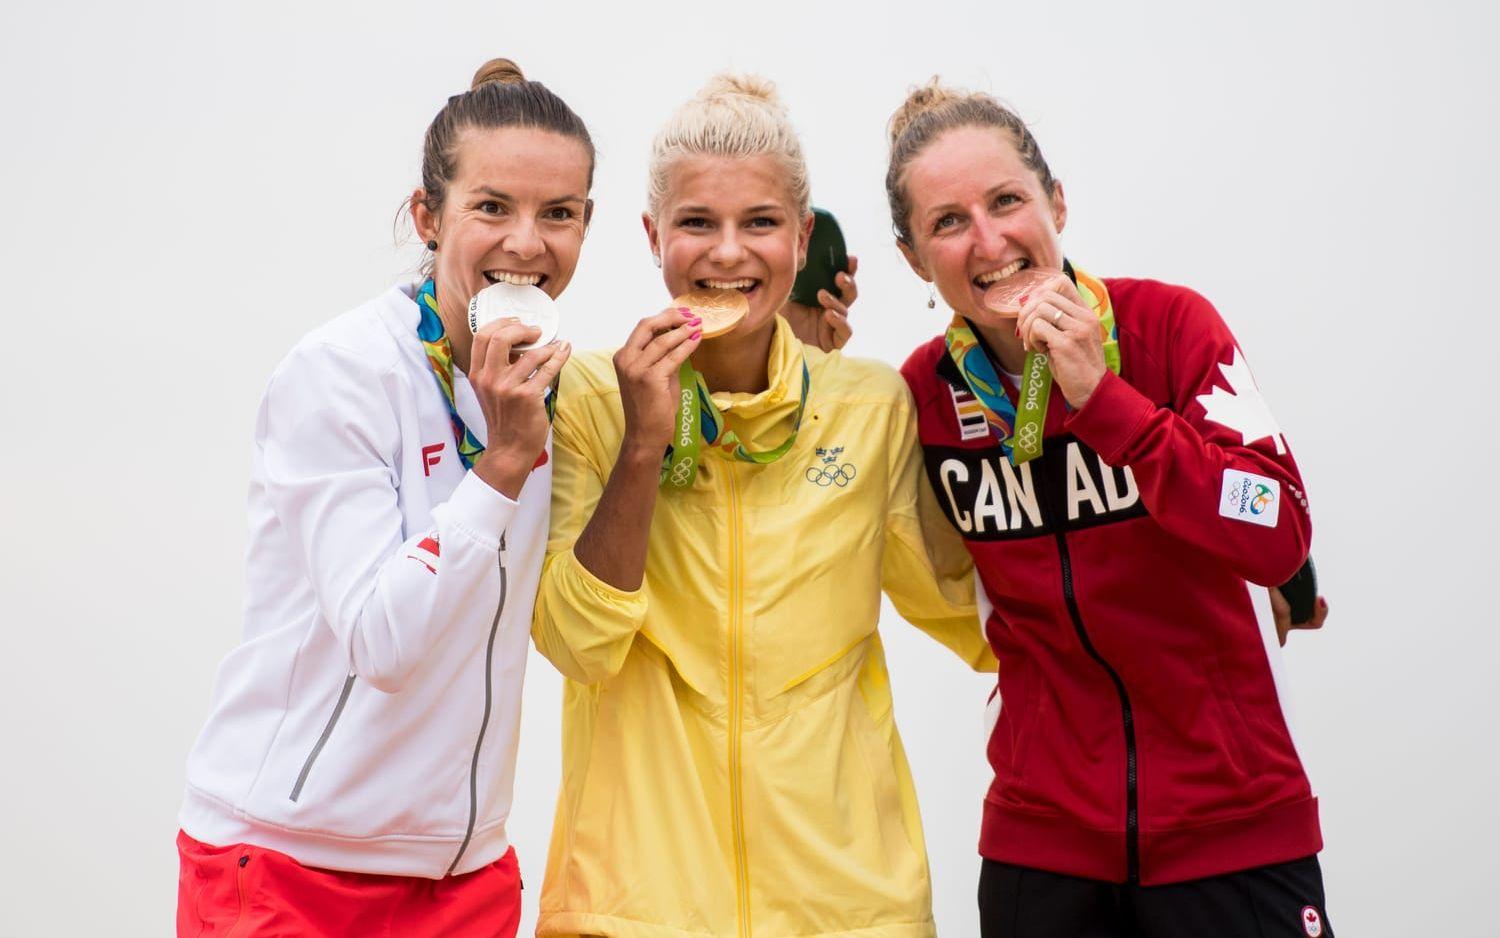 OS-guld förra sommaren för Jenny Rissveds – nu stoppas hon från att tävla på VM av förbundet. Bild: Bildbyrån